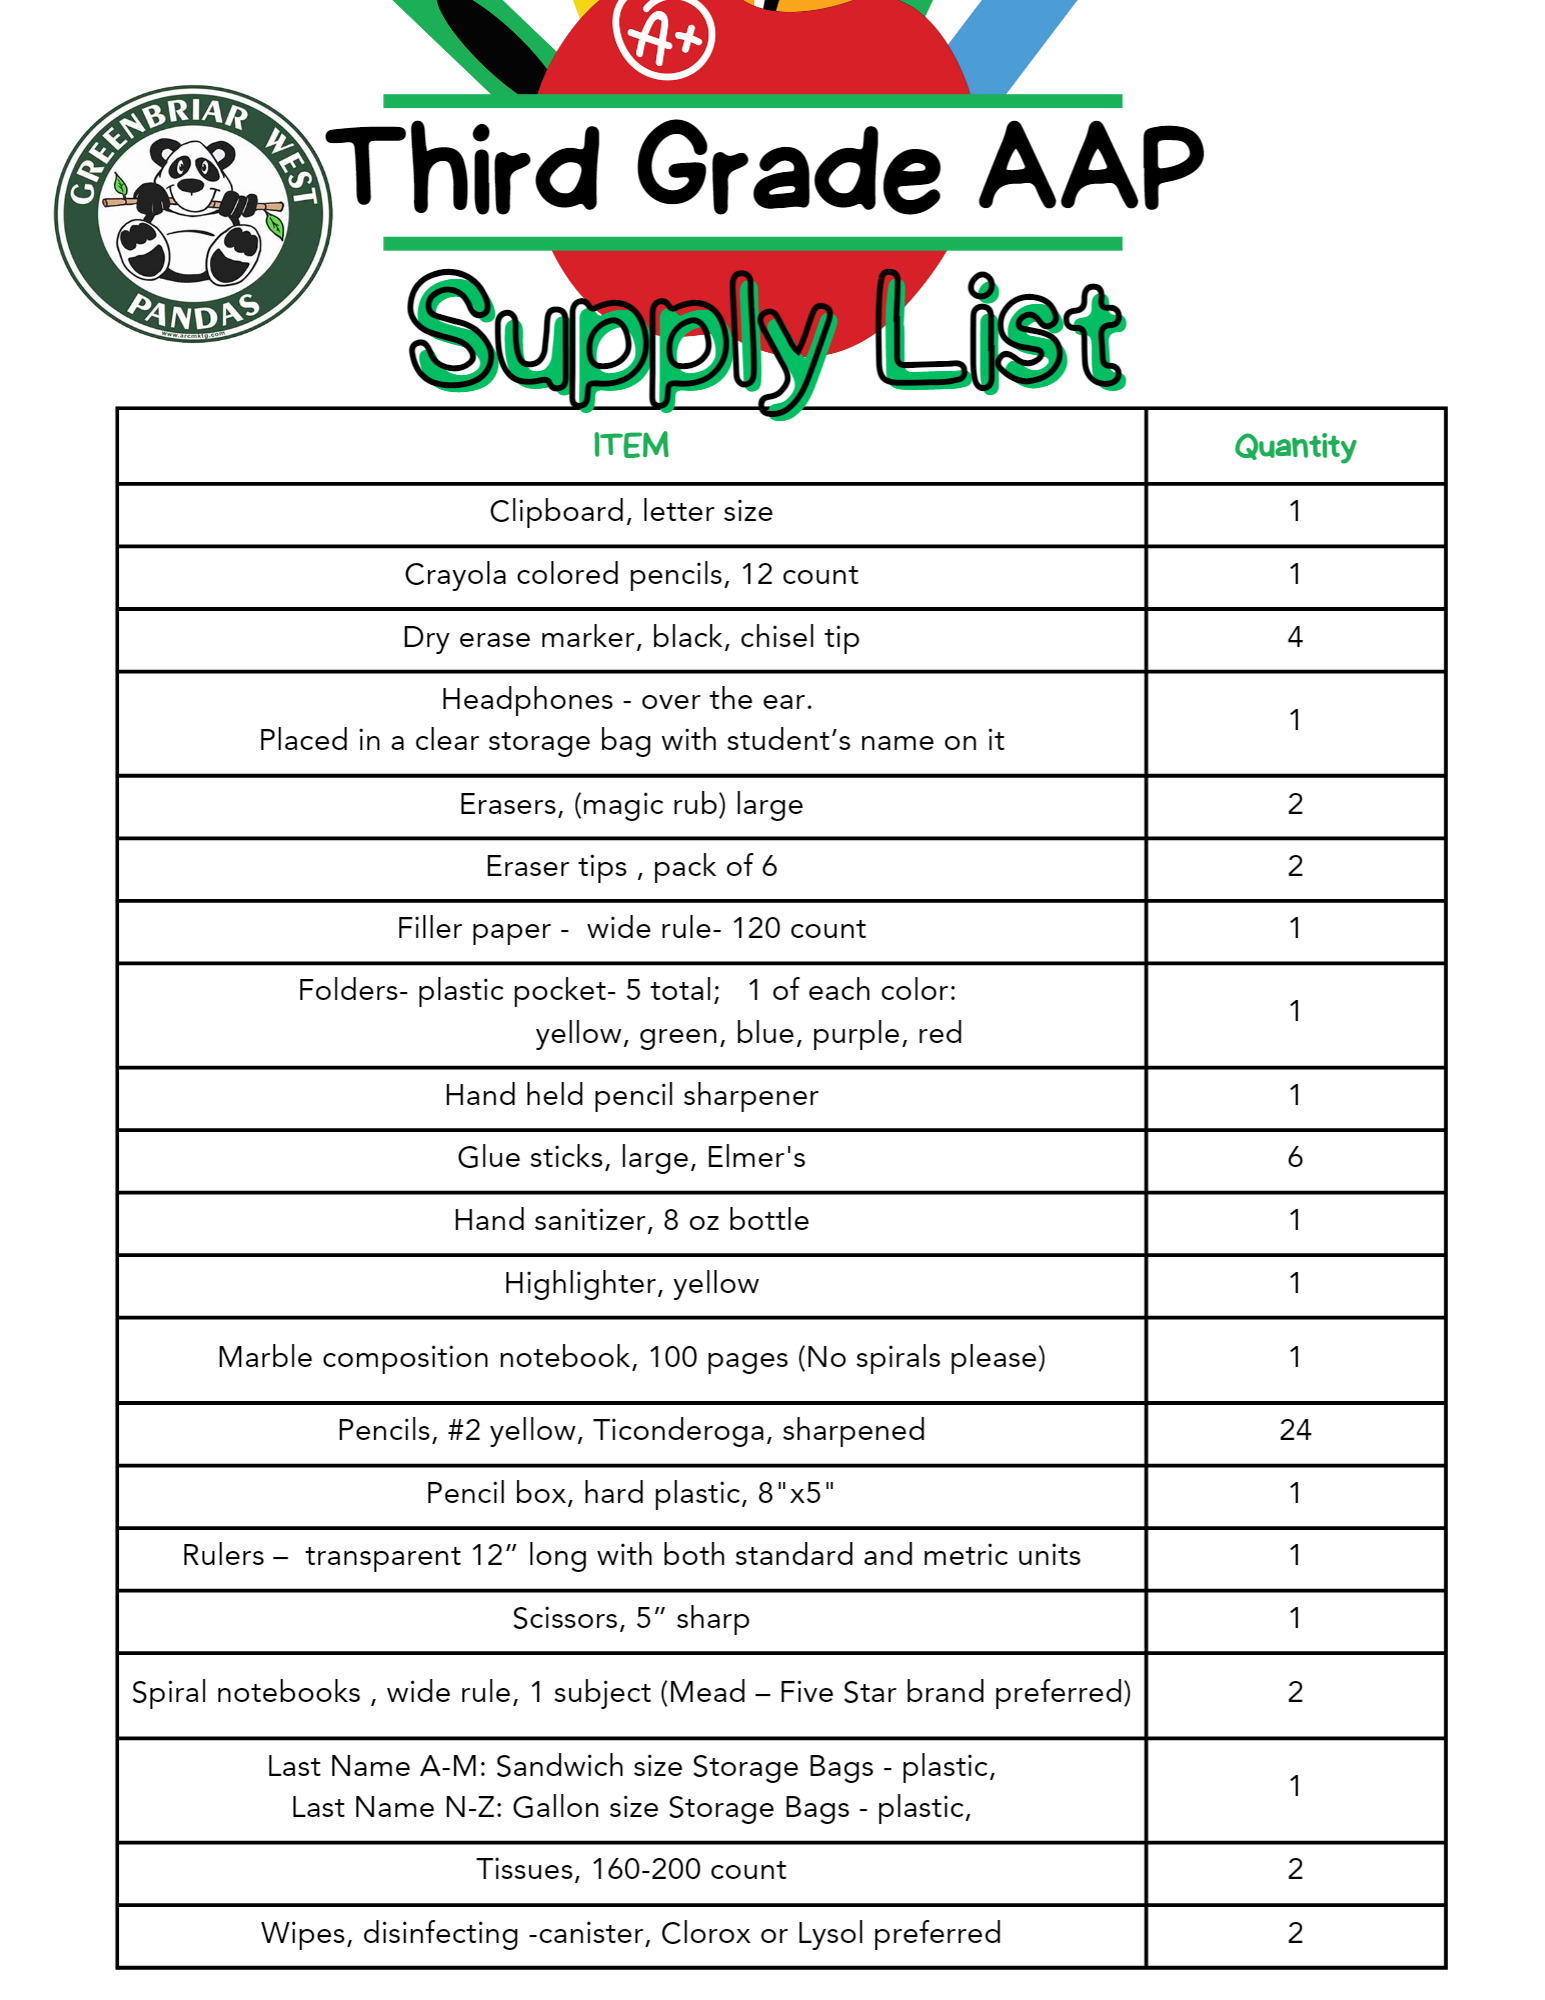 THird Grade AAP Supply list 